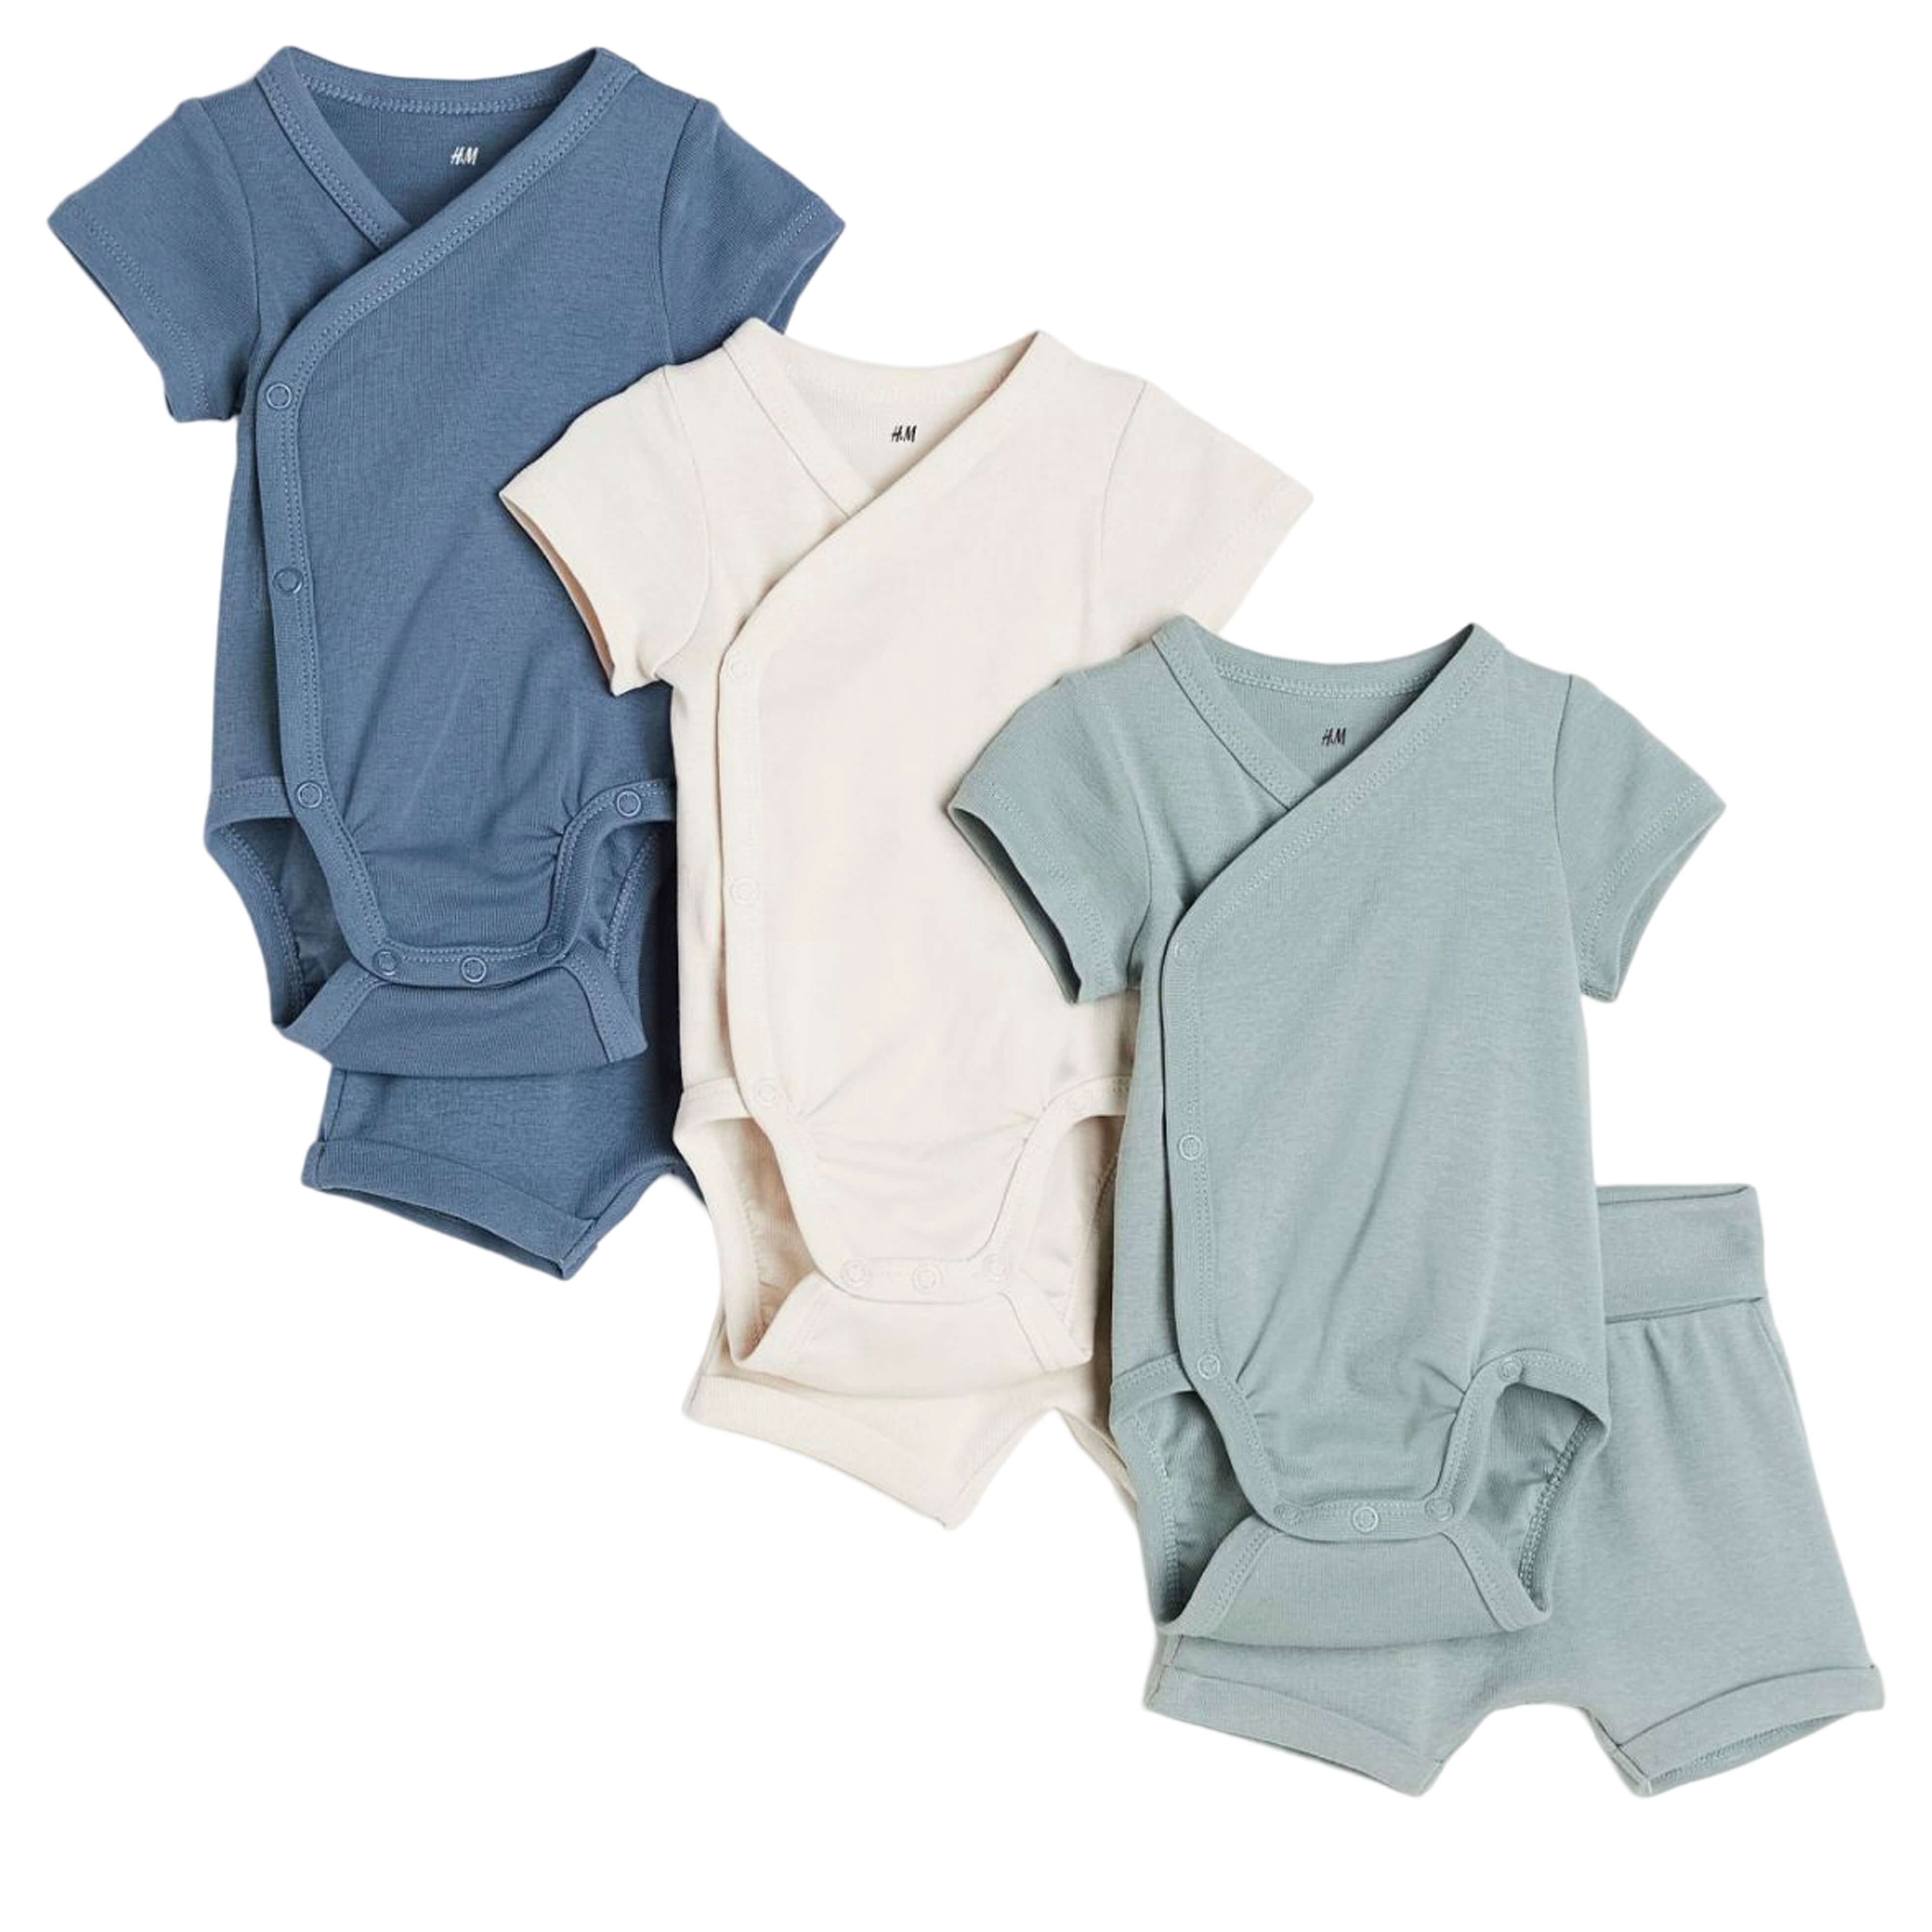 Комплект боди с шортами H&M Jersey, 6 предметов, синий/бежевый/зеленый комплект из трех боди с короткими рукавами и принтом 6 мес 67 см синий